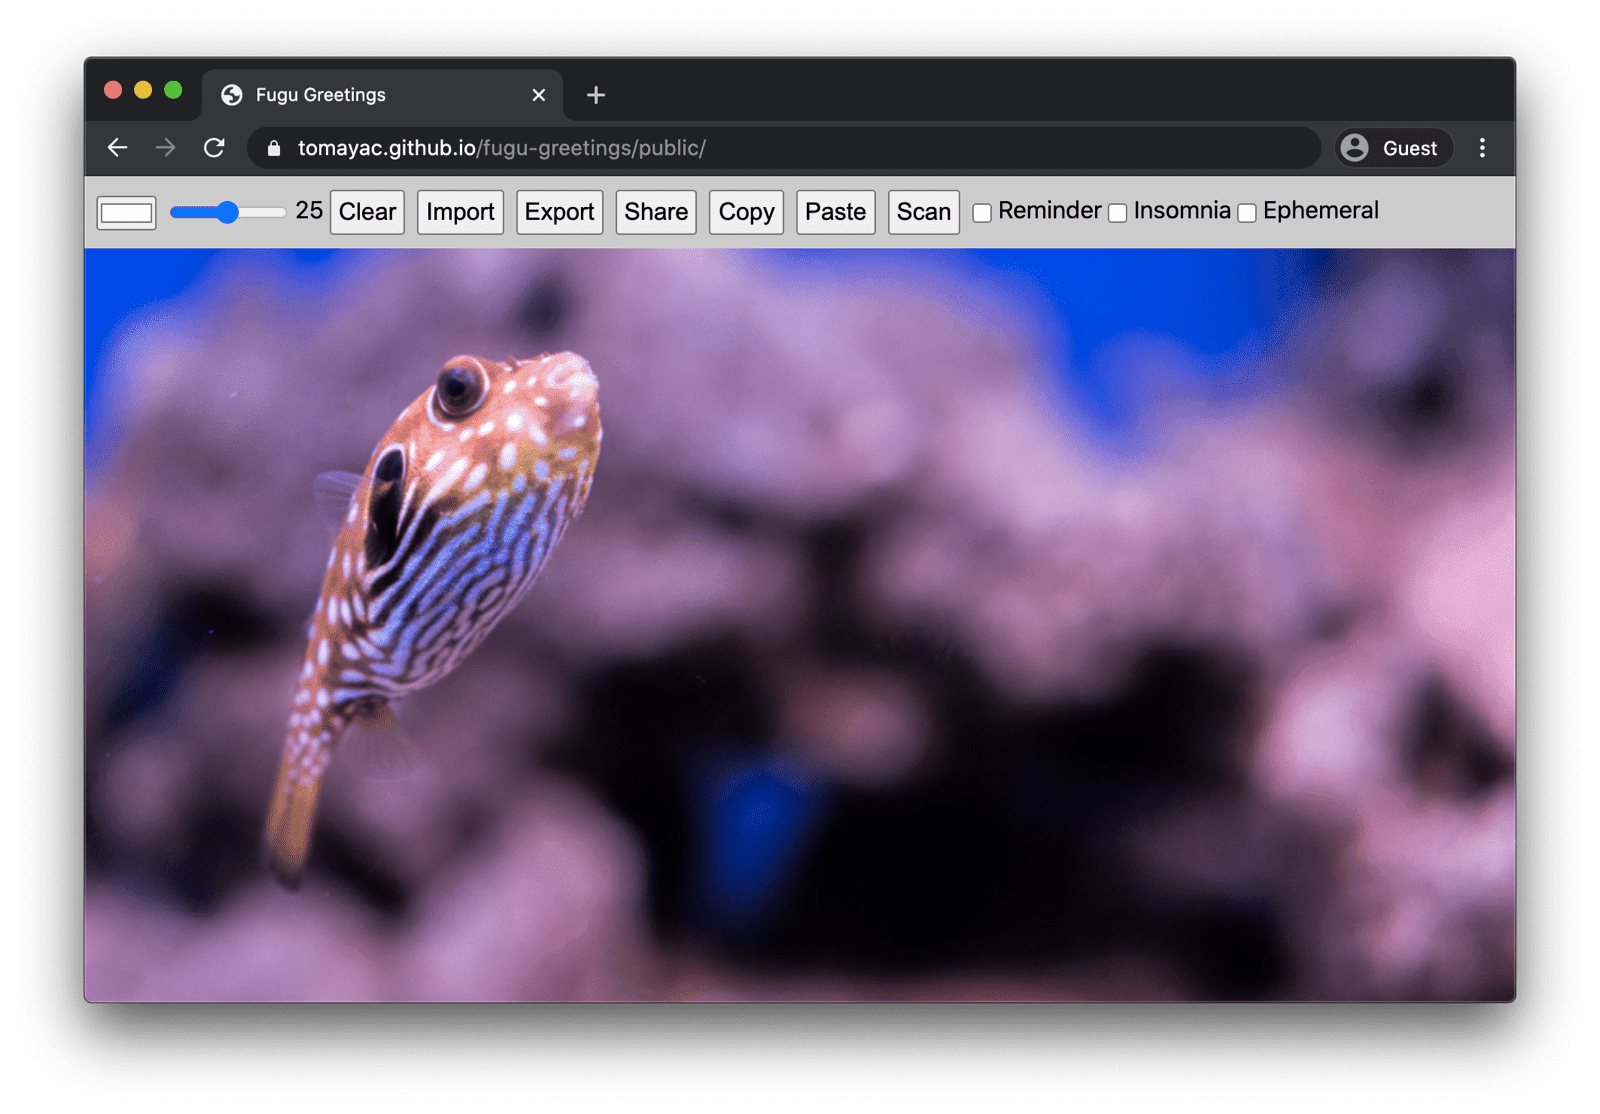 Fugu-Begrüßung, die auf dem Chrome-Desktop läuft und viele verfügbare Funktionen zeigt.